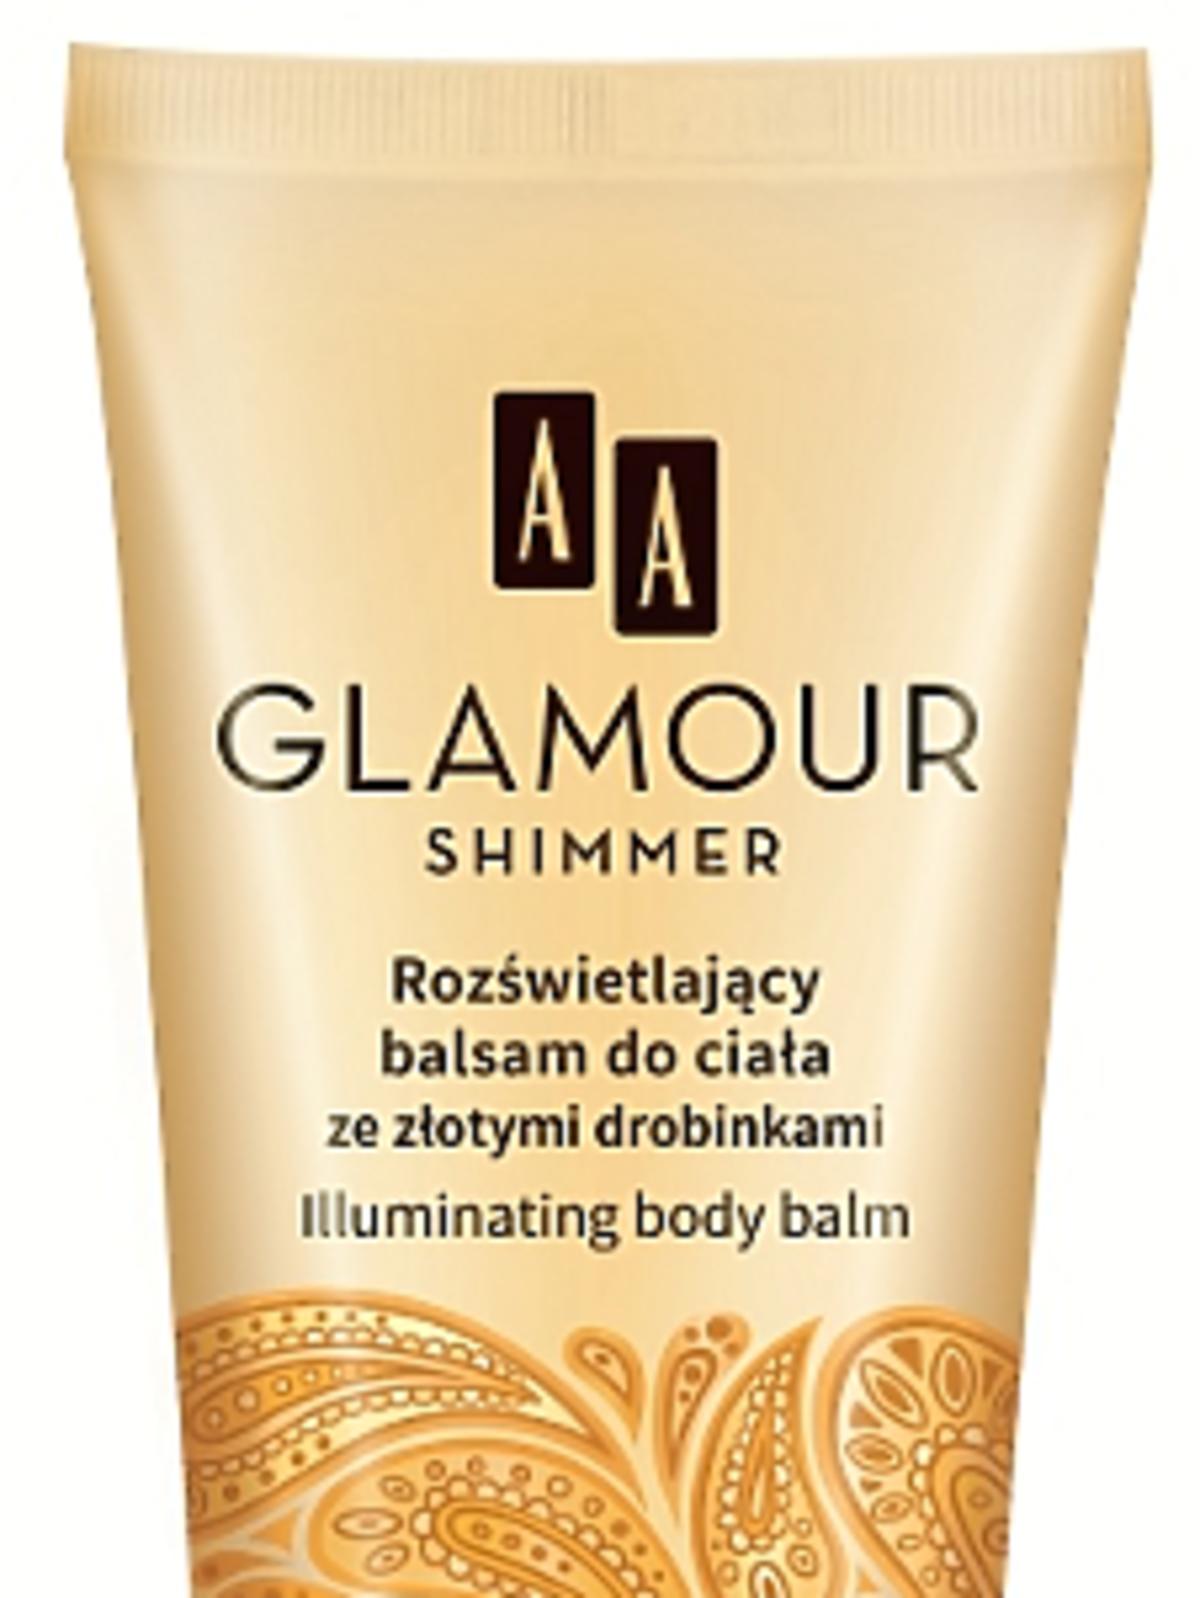 Rozświetlający balsam do ciała ze złotymi drobinkami Glamour Shimmer AA Glamour, 16,99zł